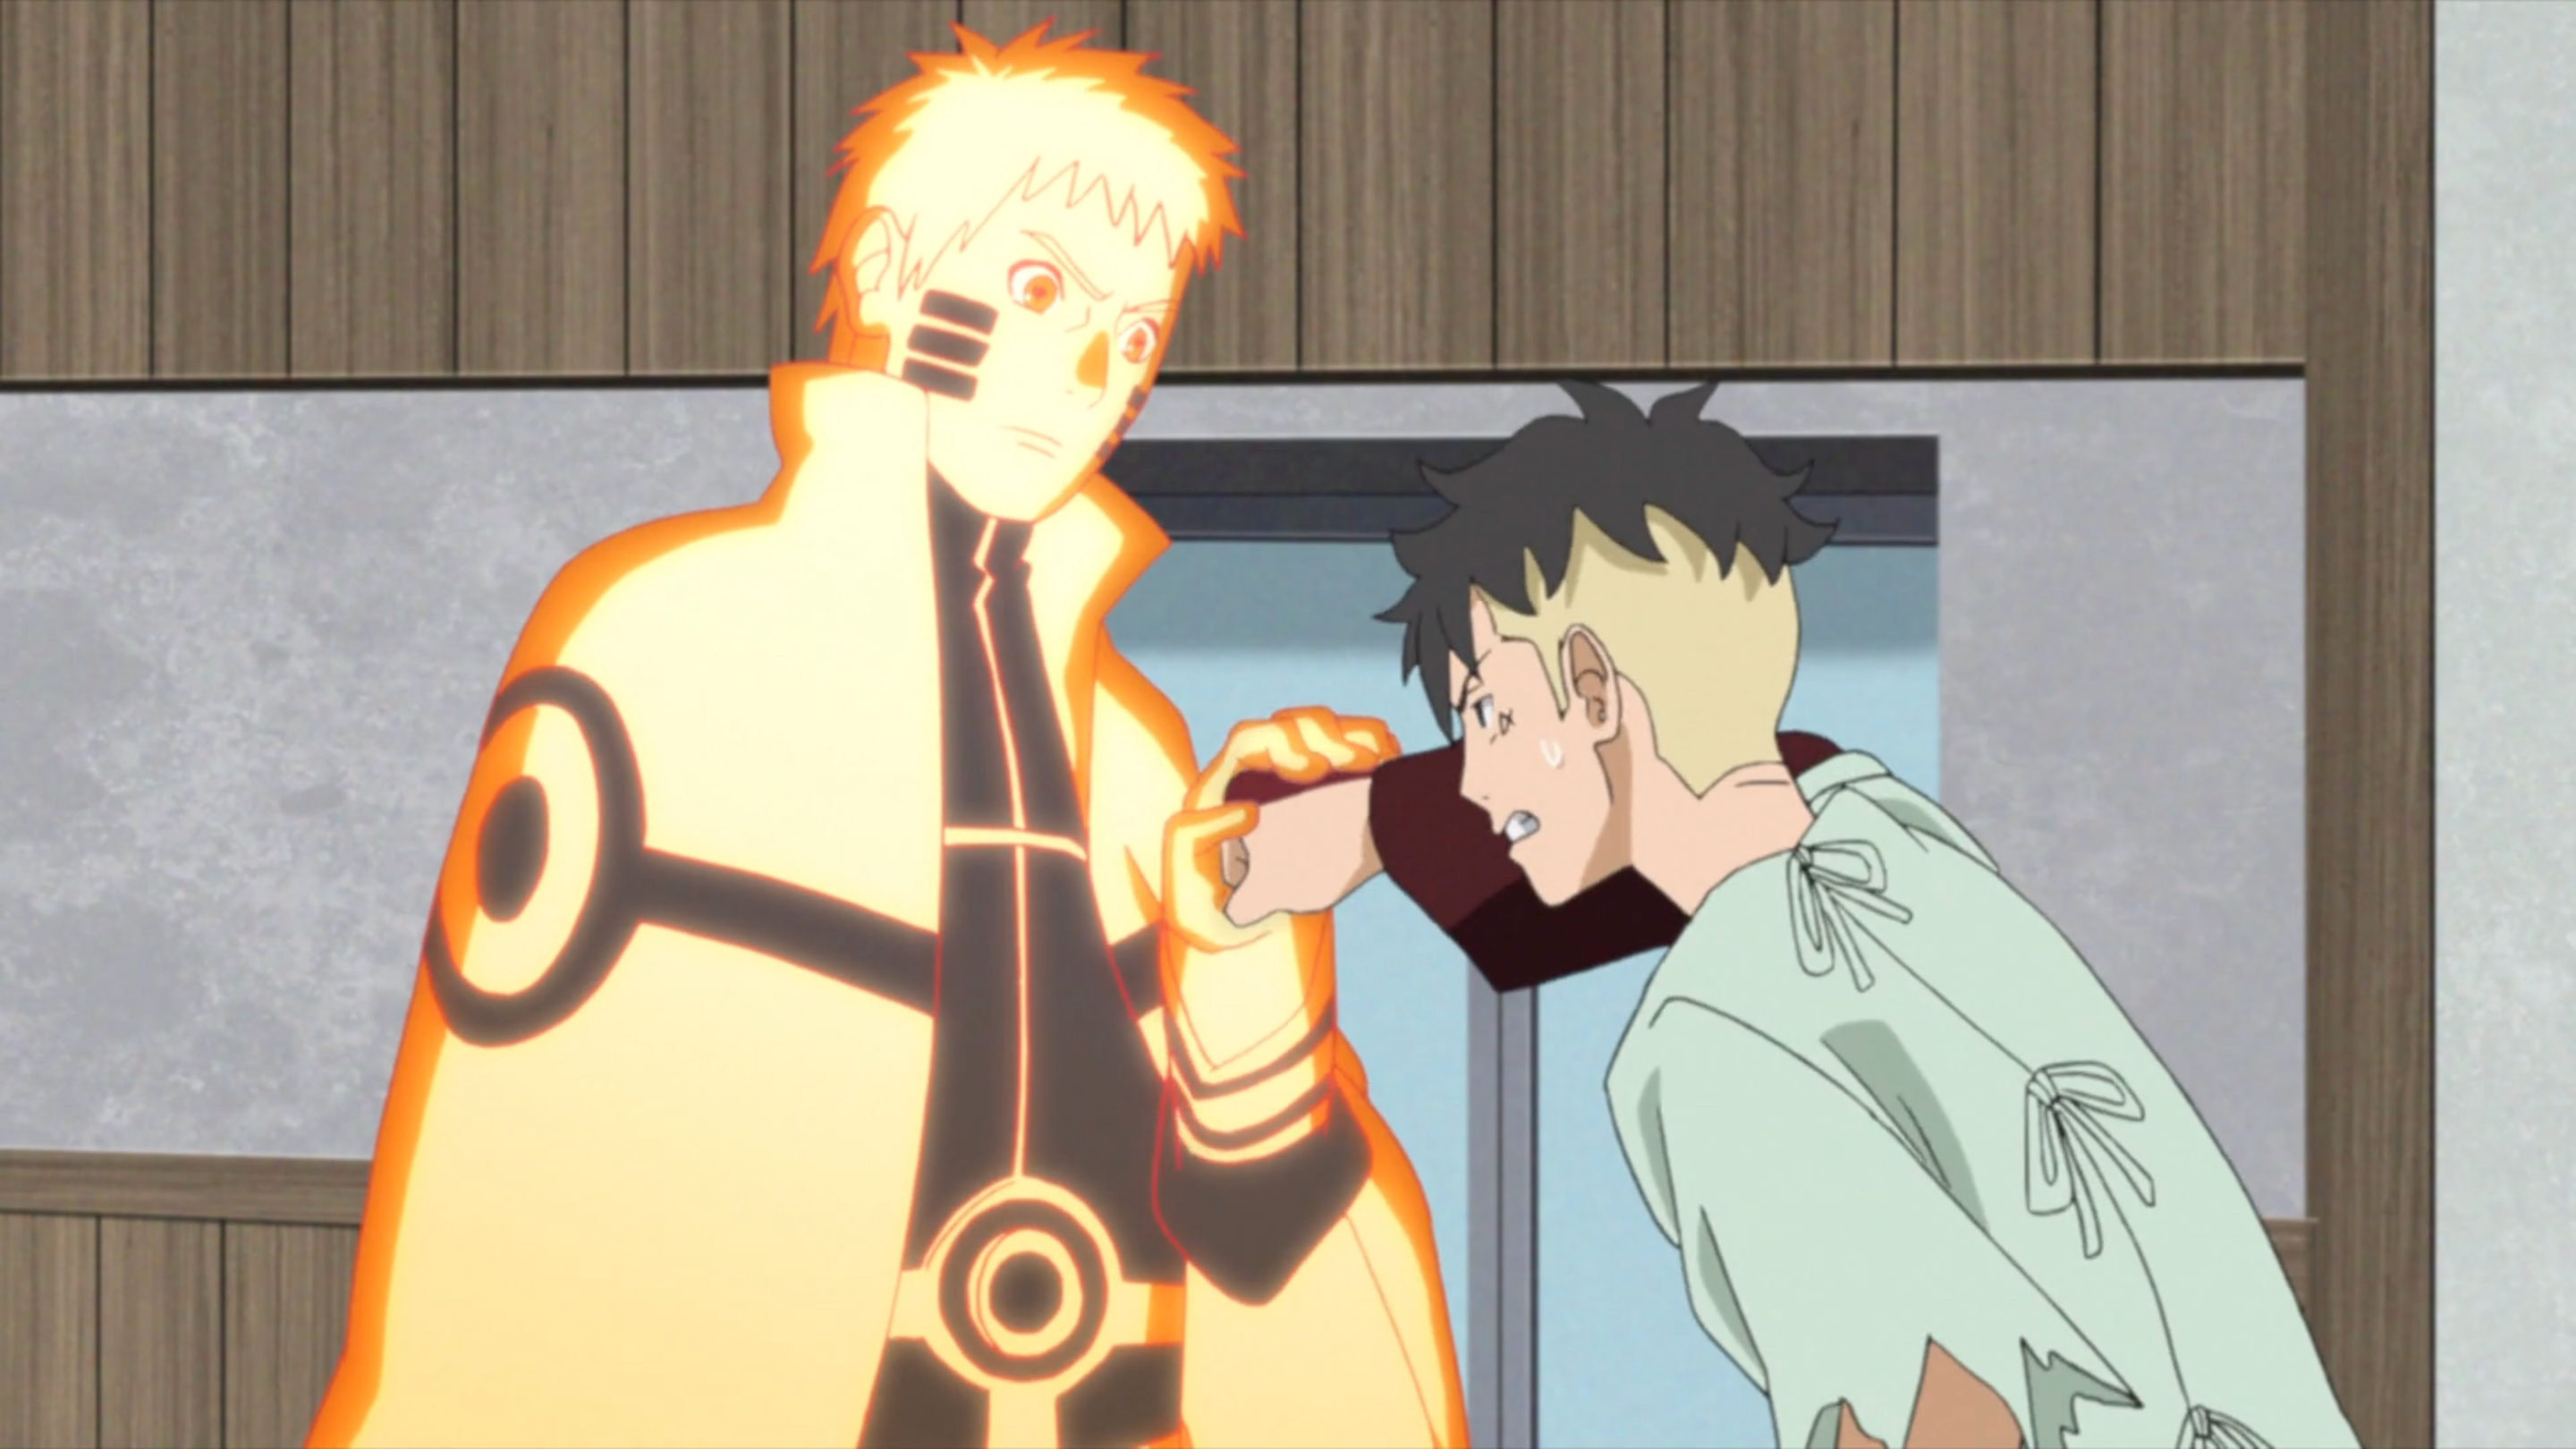 Kawaki confronts Naruto